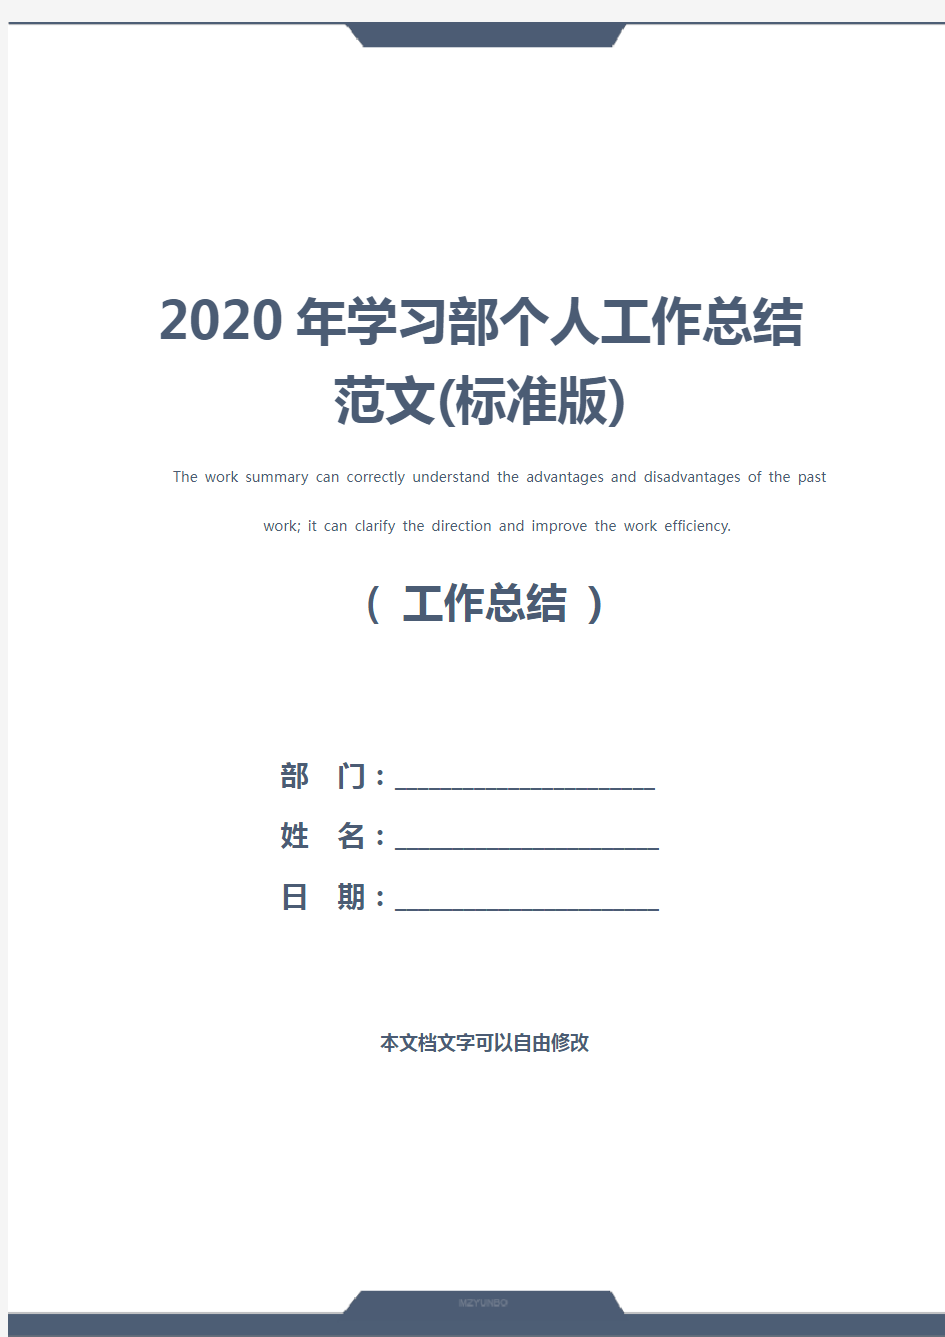 2020年学习部个人工作总结范文(标准版)